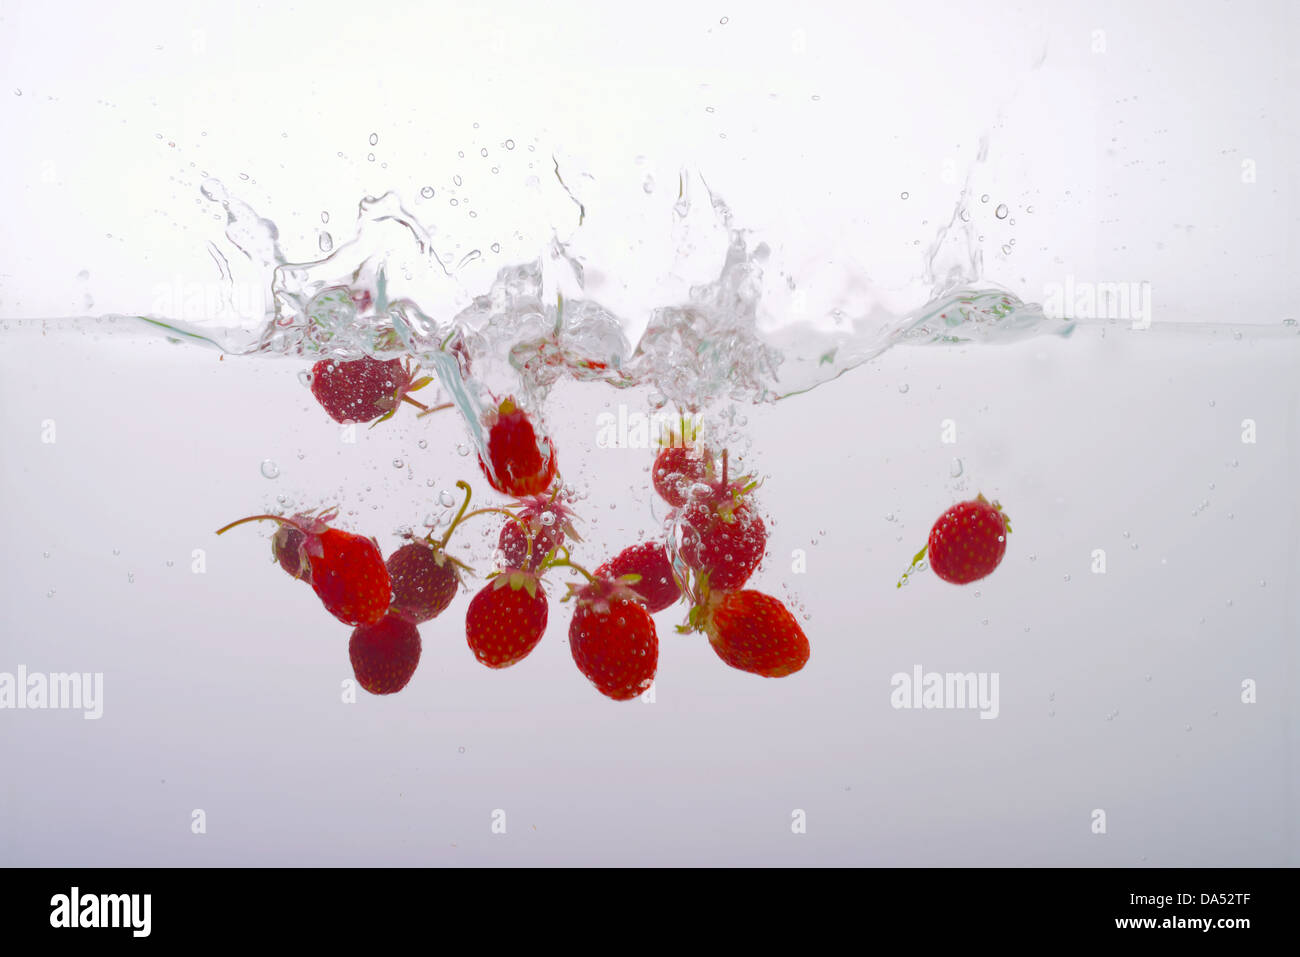 Les fraises dans l'eau éclaboussée Banque D'Images